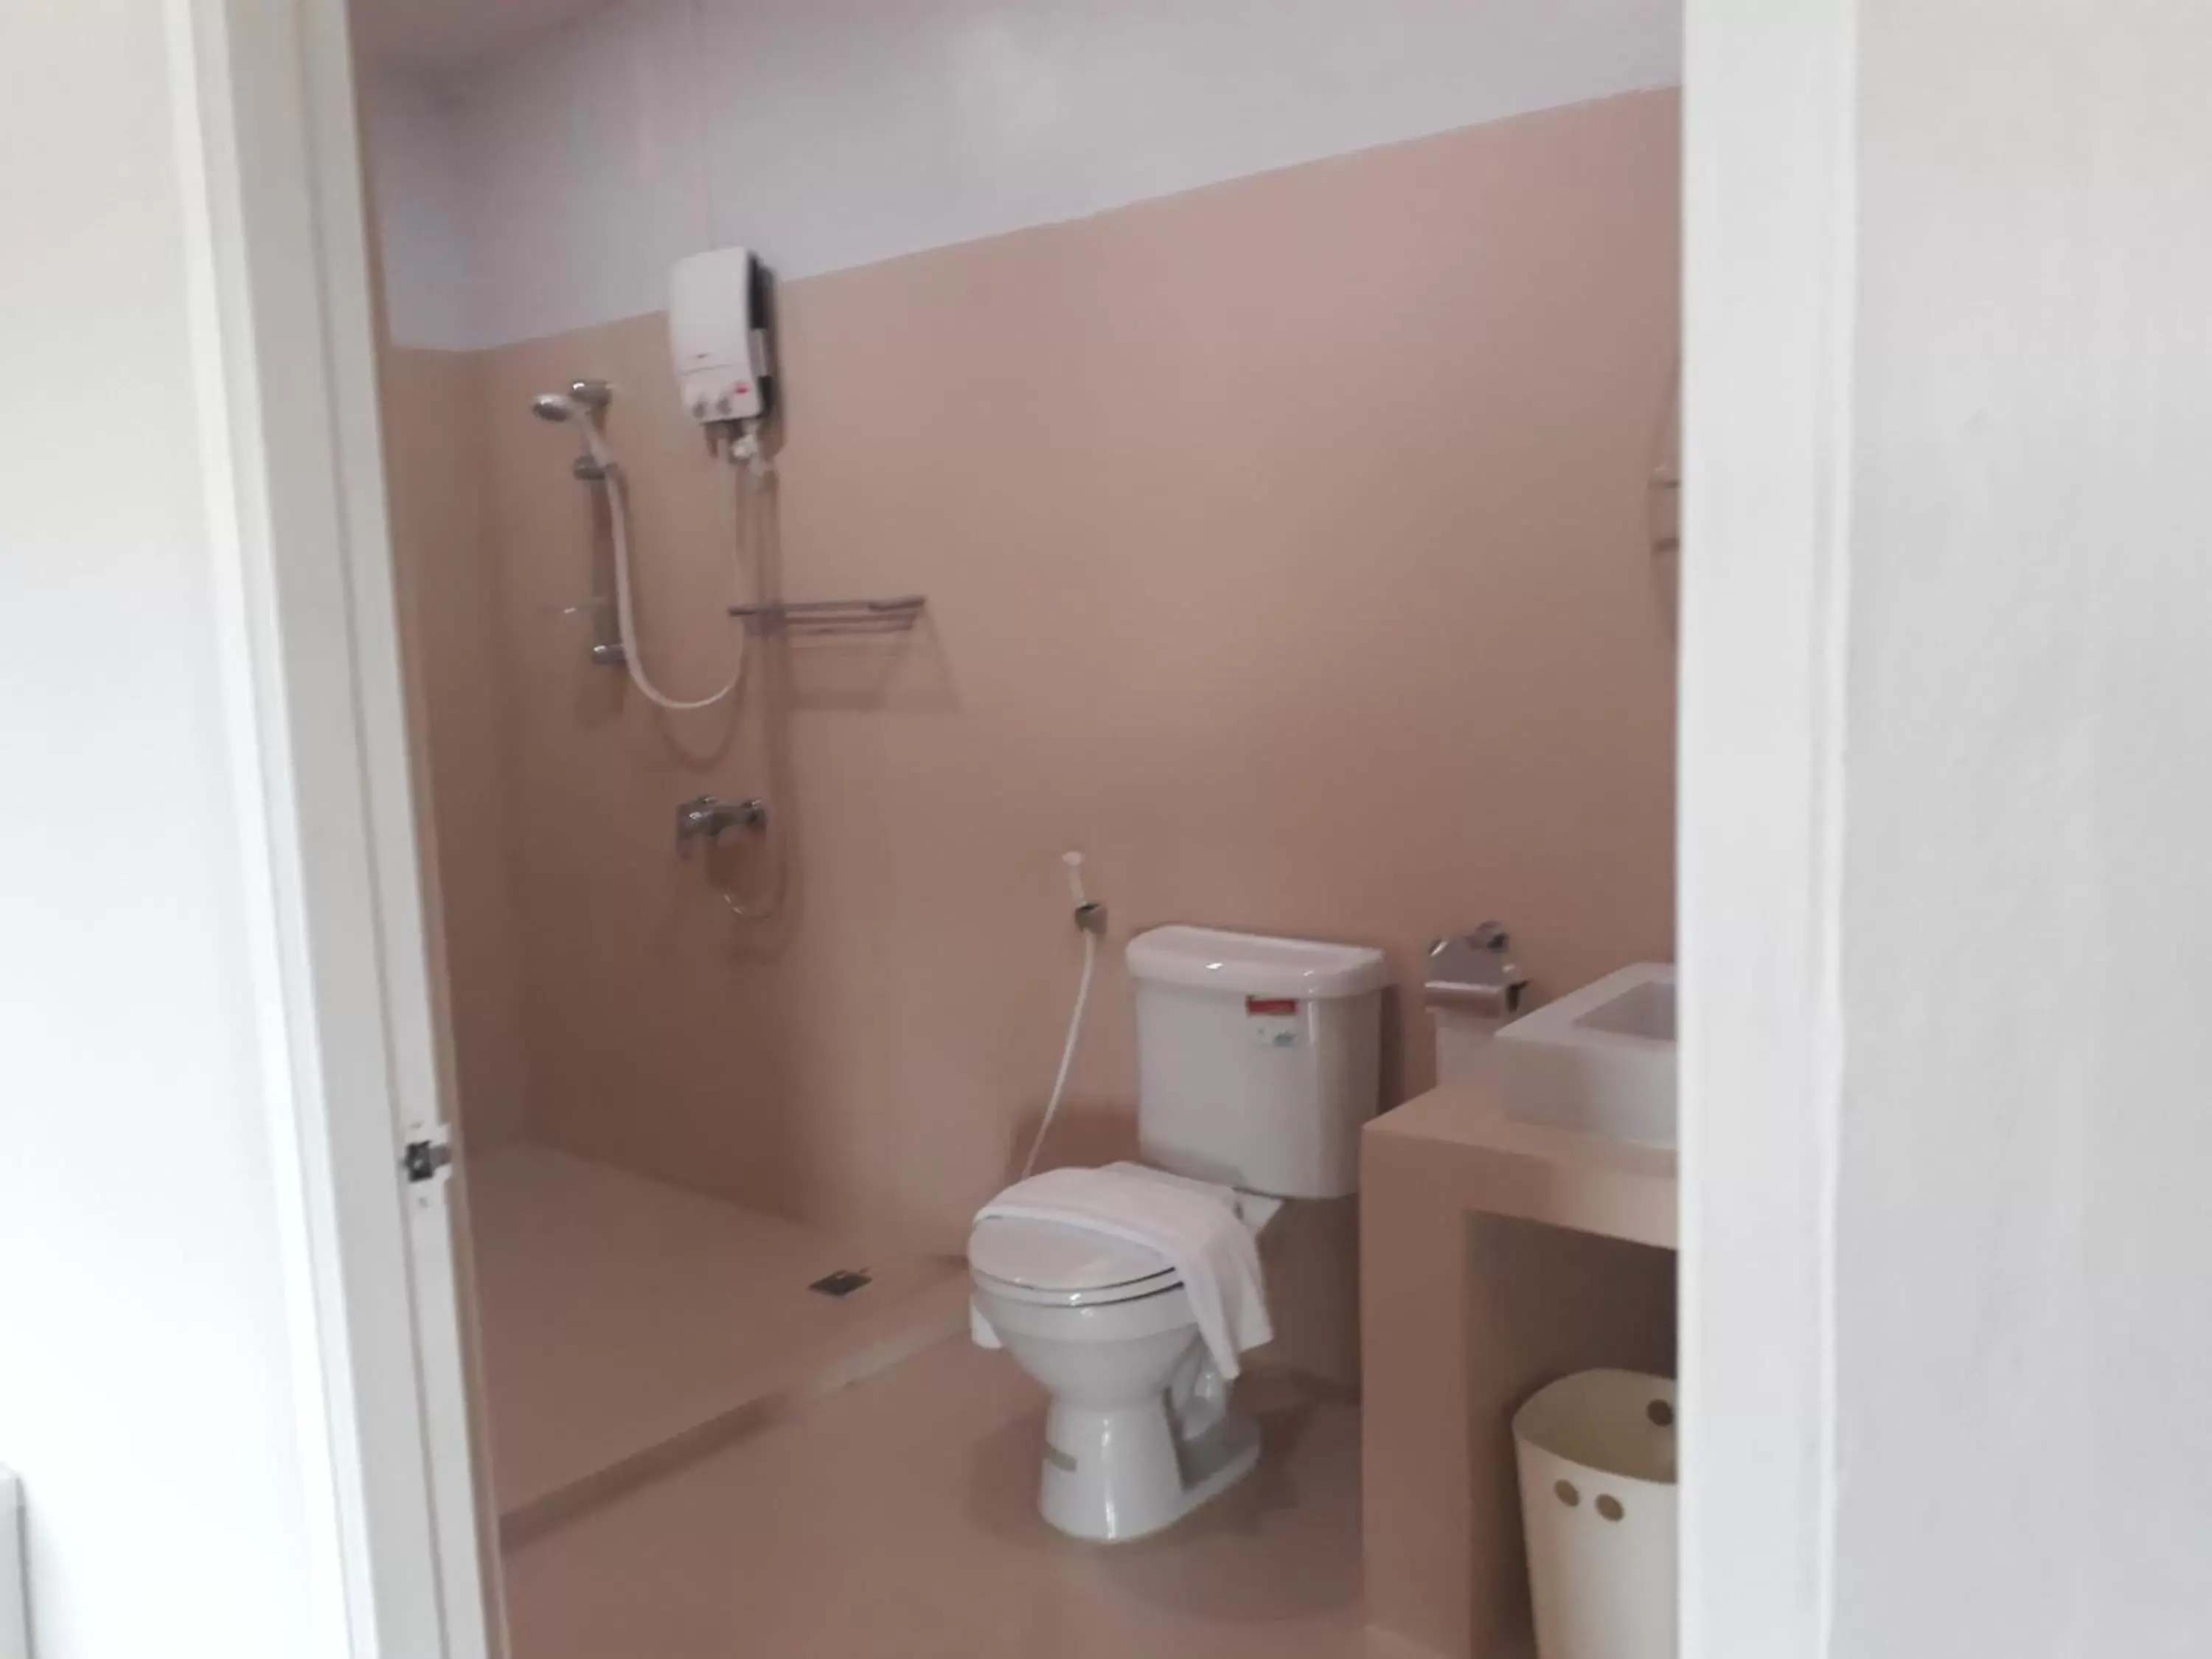 Bathroom in S2S Queen Trang Hotel